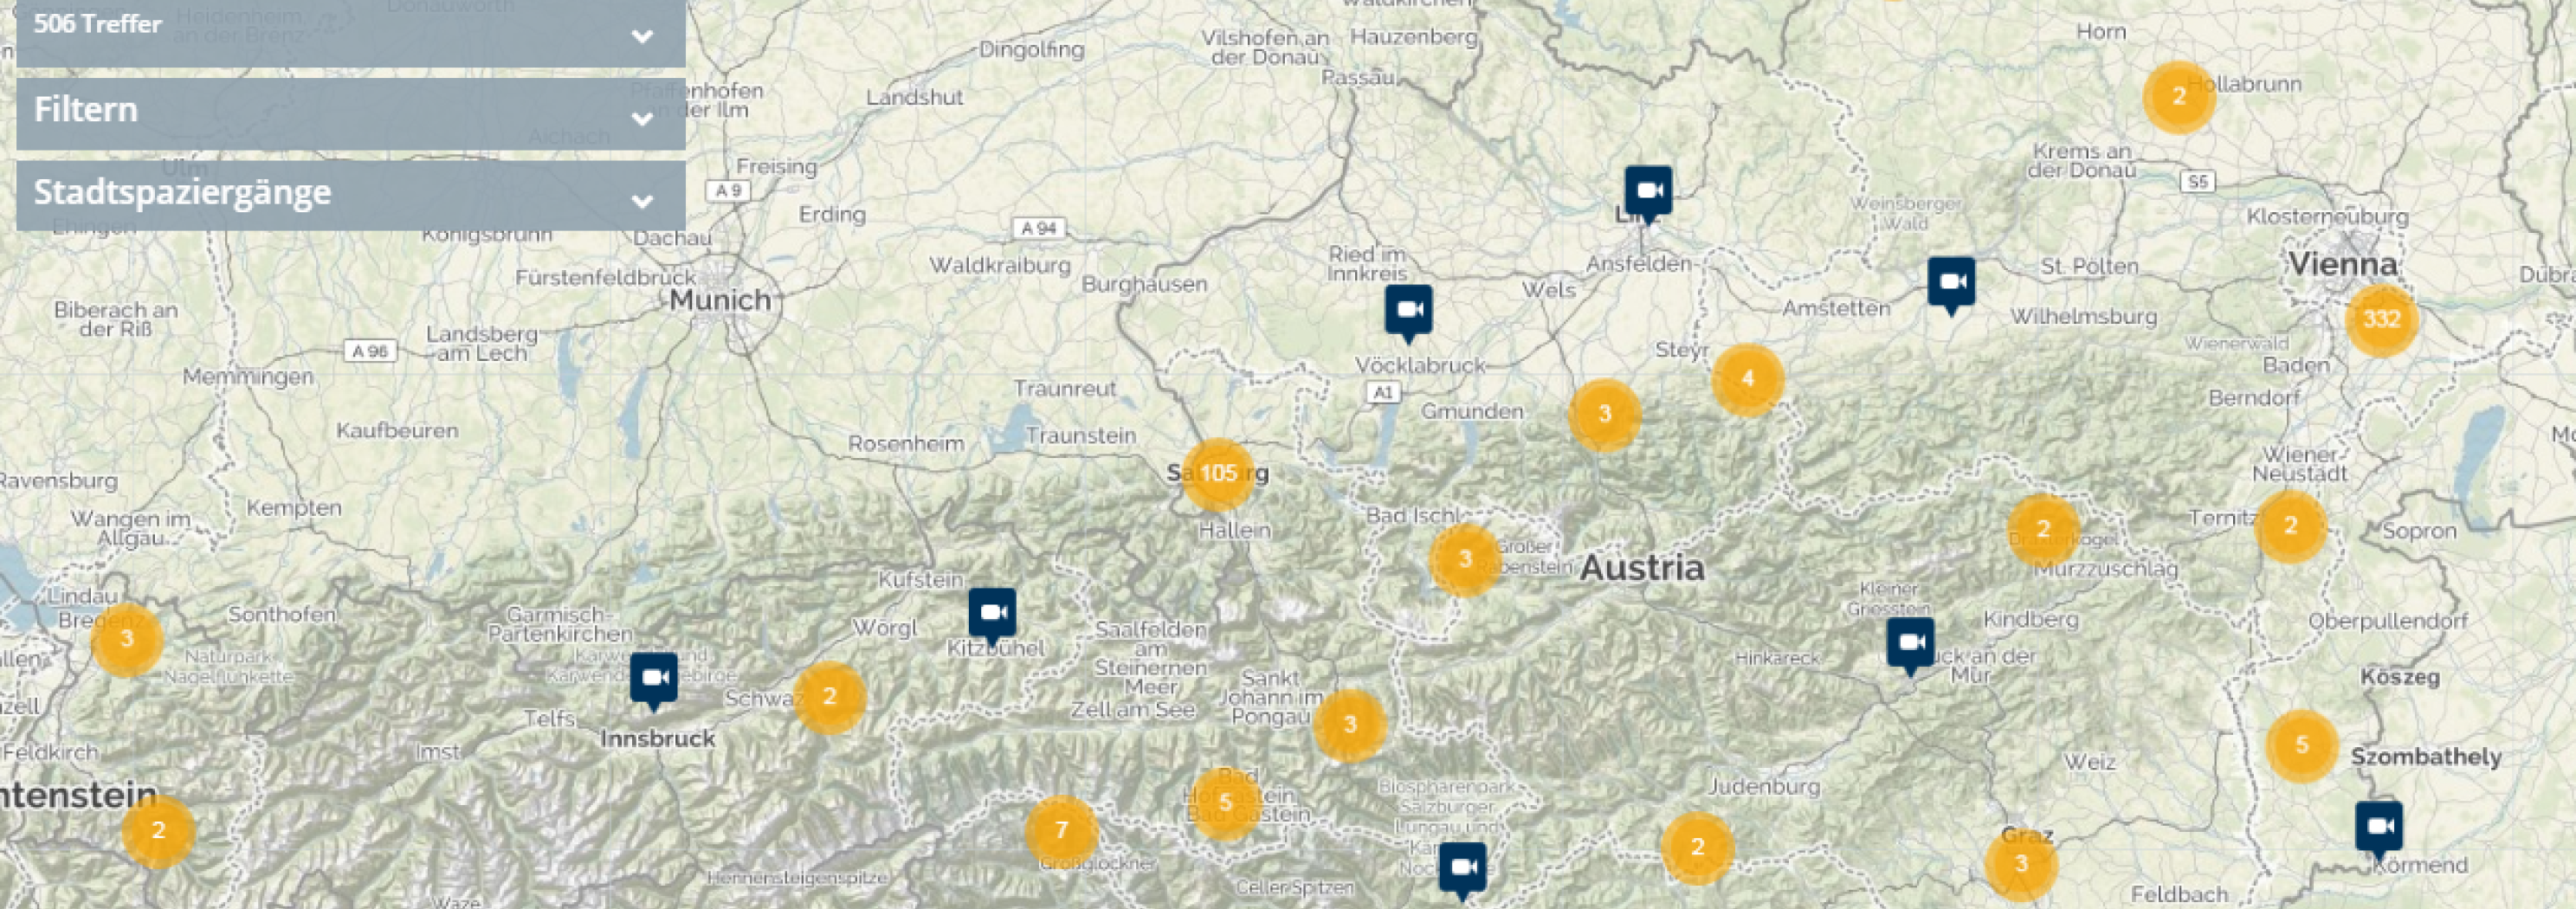 Audiovisueller Atlas Österreichs für Archivaufnahmen